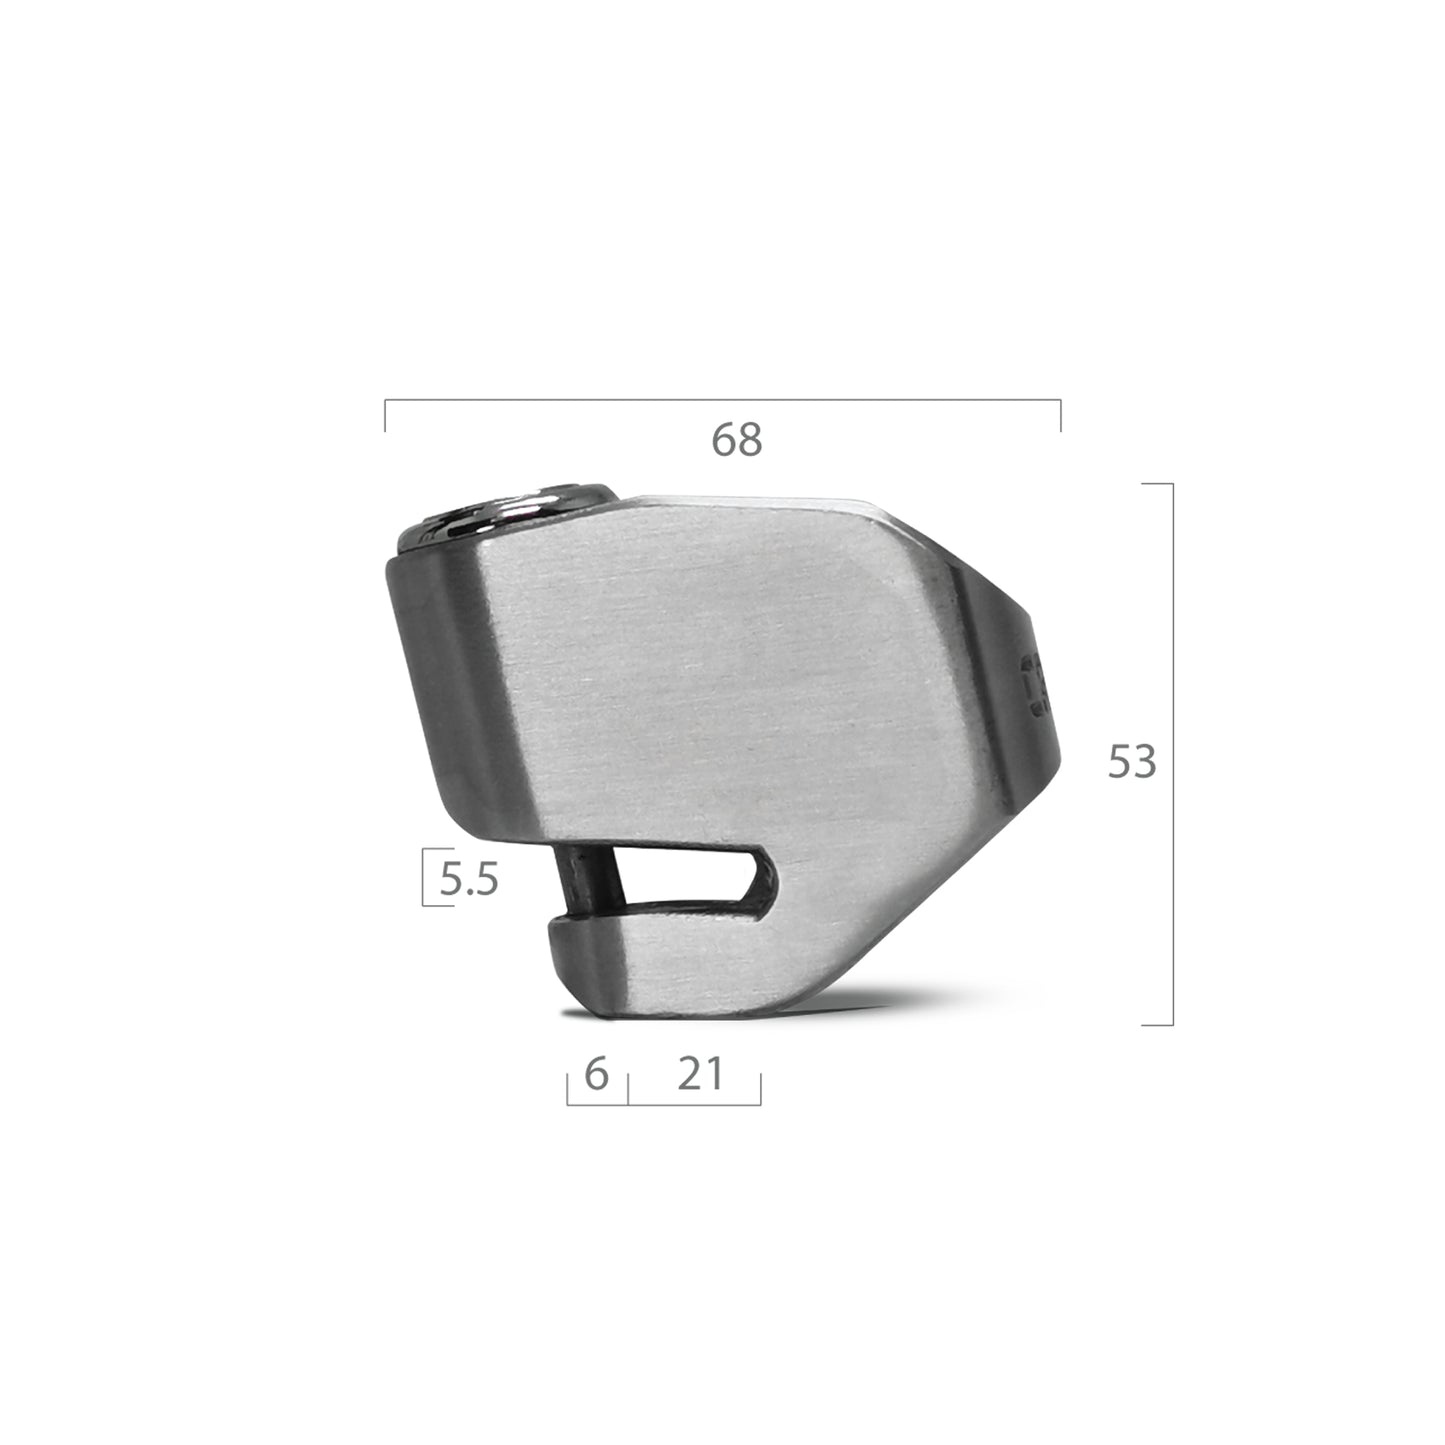 CRANNS Zero6 304 Stainless Steel Disc Lock, Antivol Moto Bloque Disque